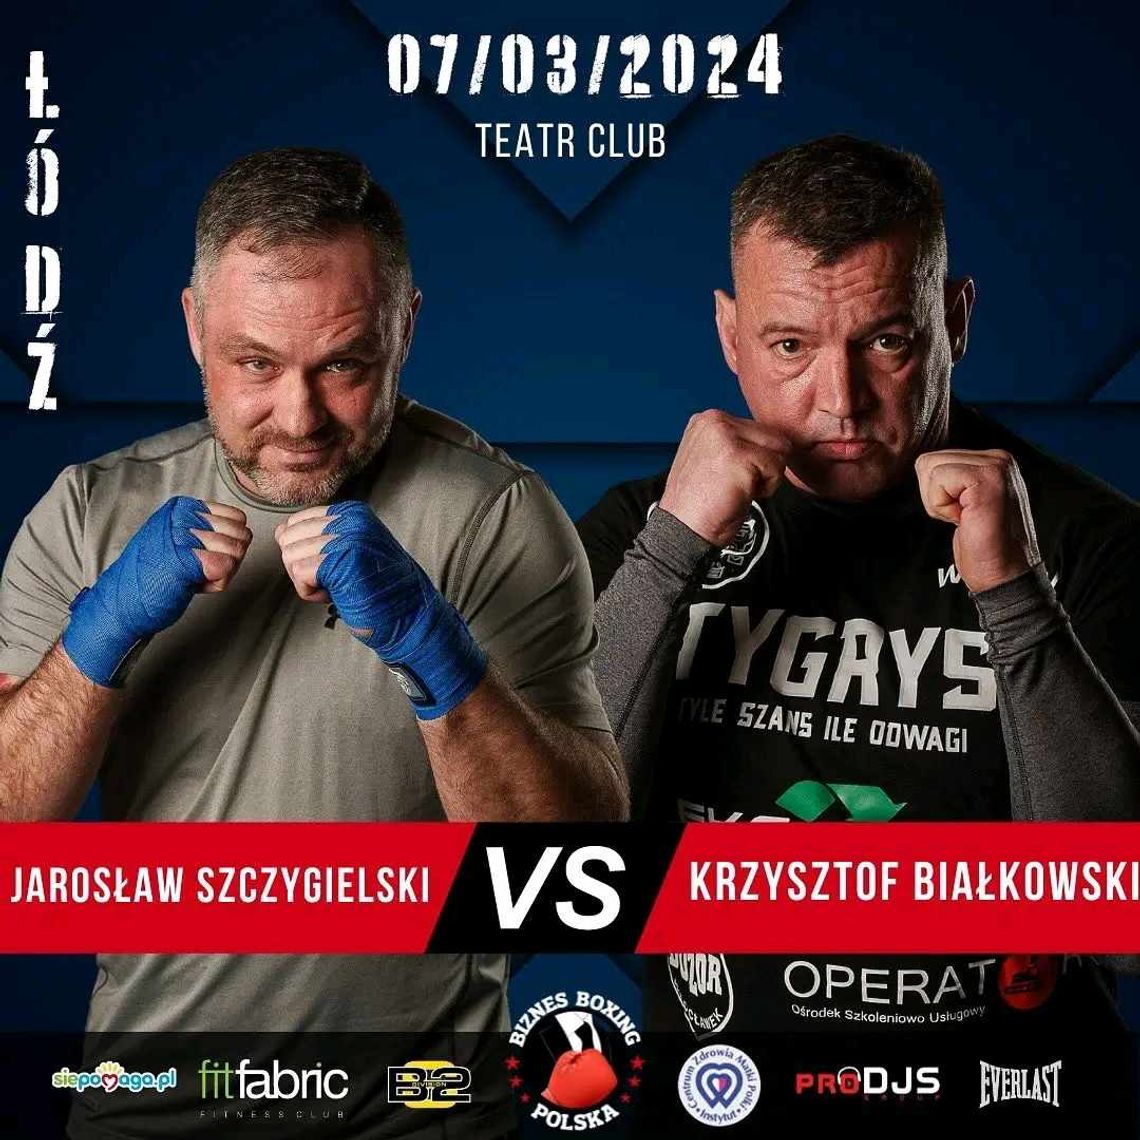 Włocławianin wystąpi dziś na gali bokserskiej w Łodzi "Biznes Boxing Polska"